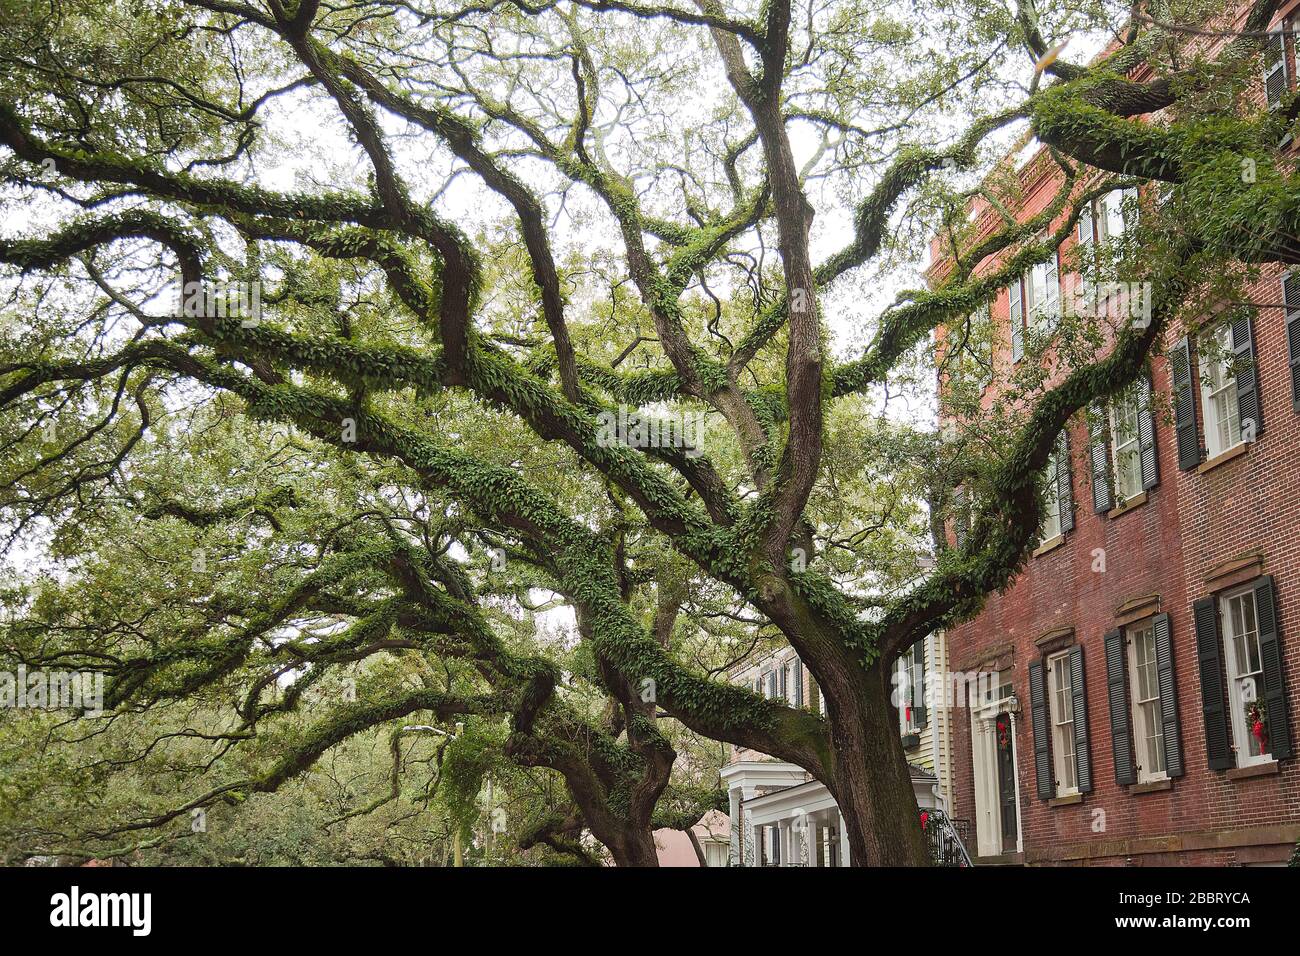 La mousse espagnole sur de beaux vieux chênes couchés vivent dans les vieilles rues de Savannah, Géorgie, aux États-Unis d'Amérique. Banque D'Images